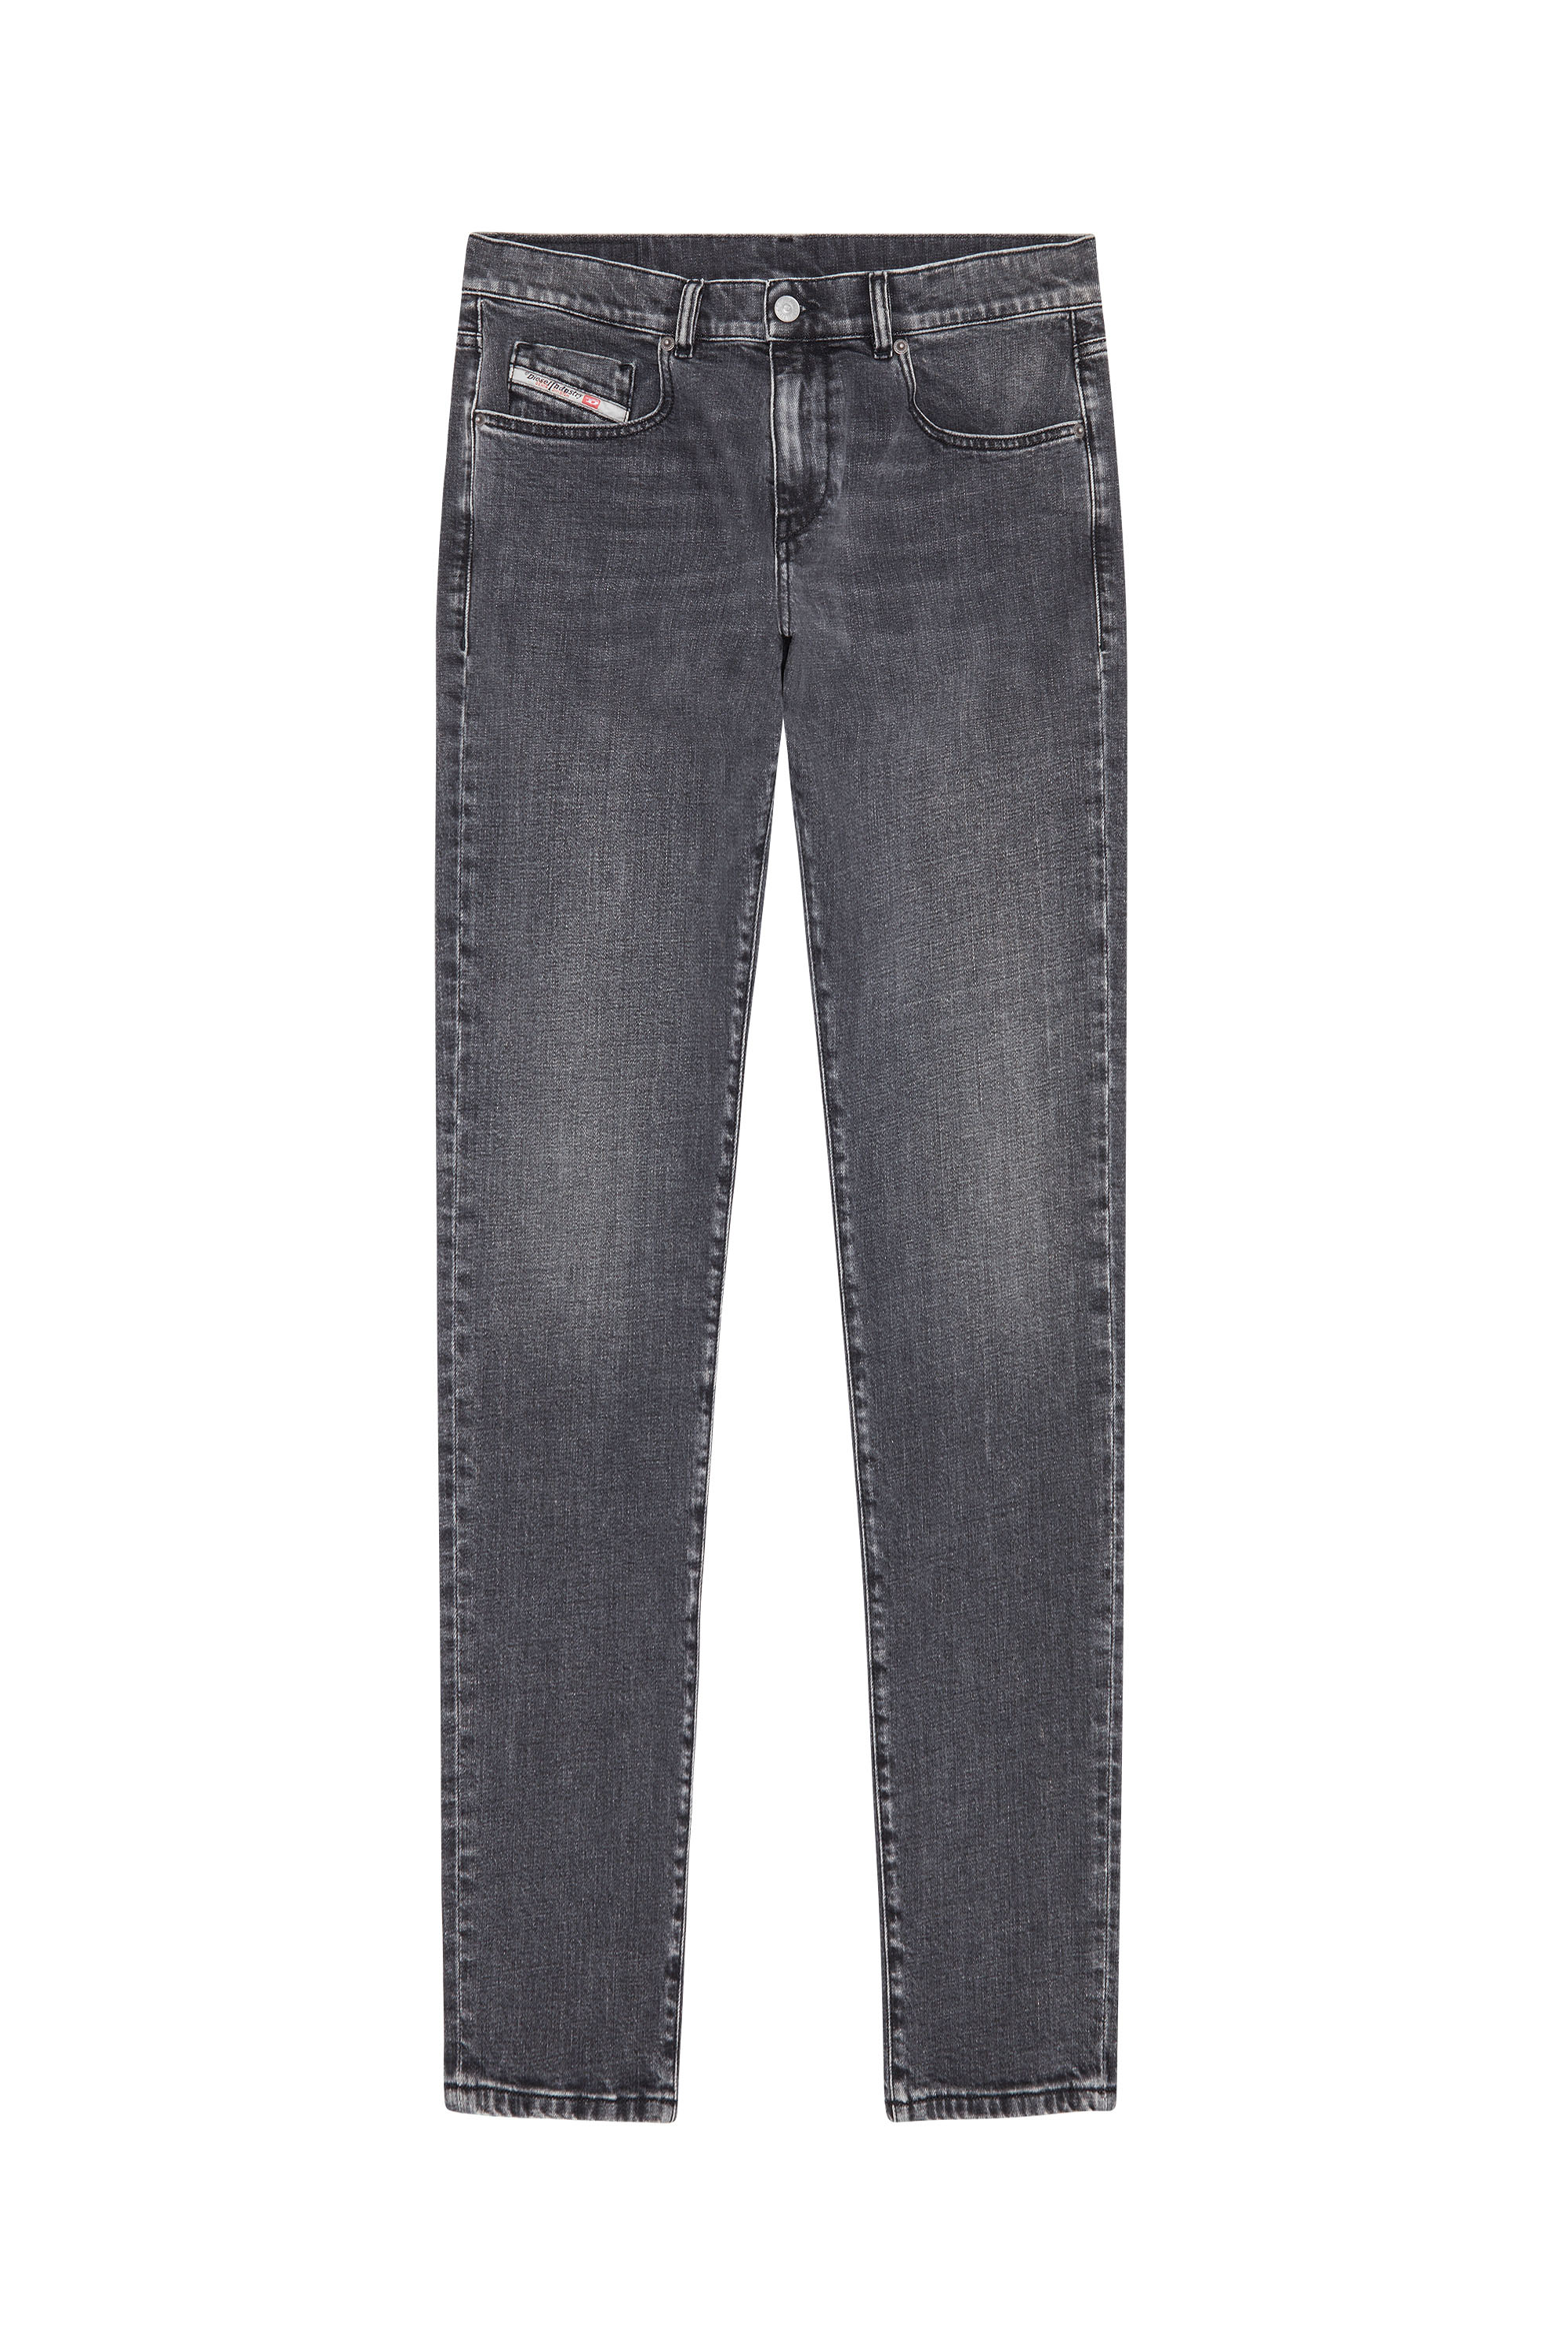 2019 D-Strukt 09C47 Slim Jeans, Black/Dark grey - Jeans